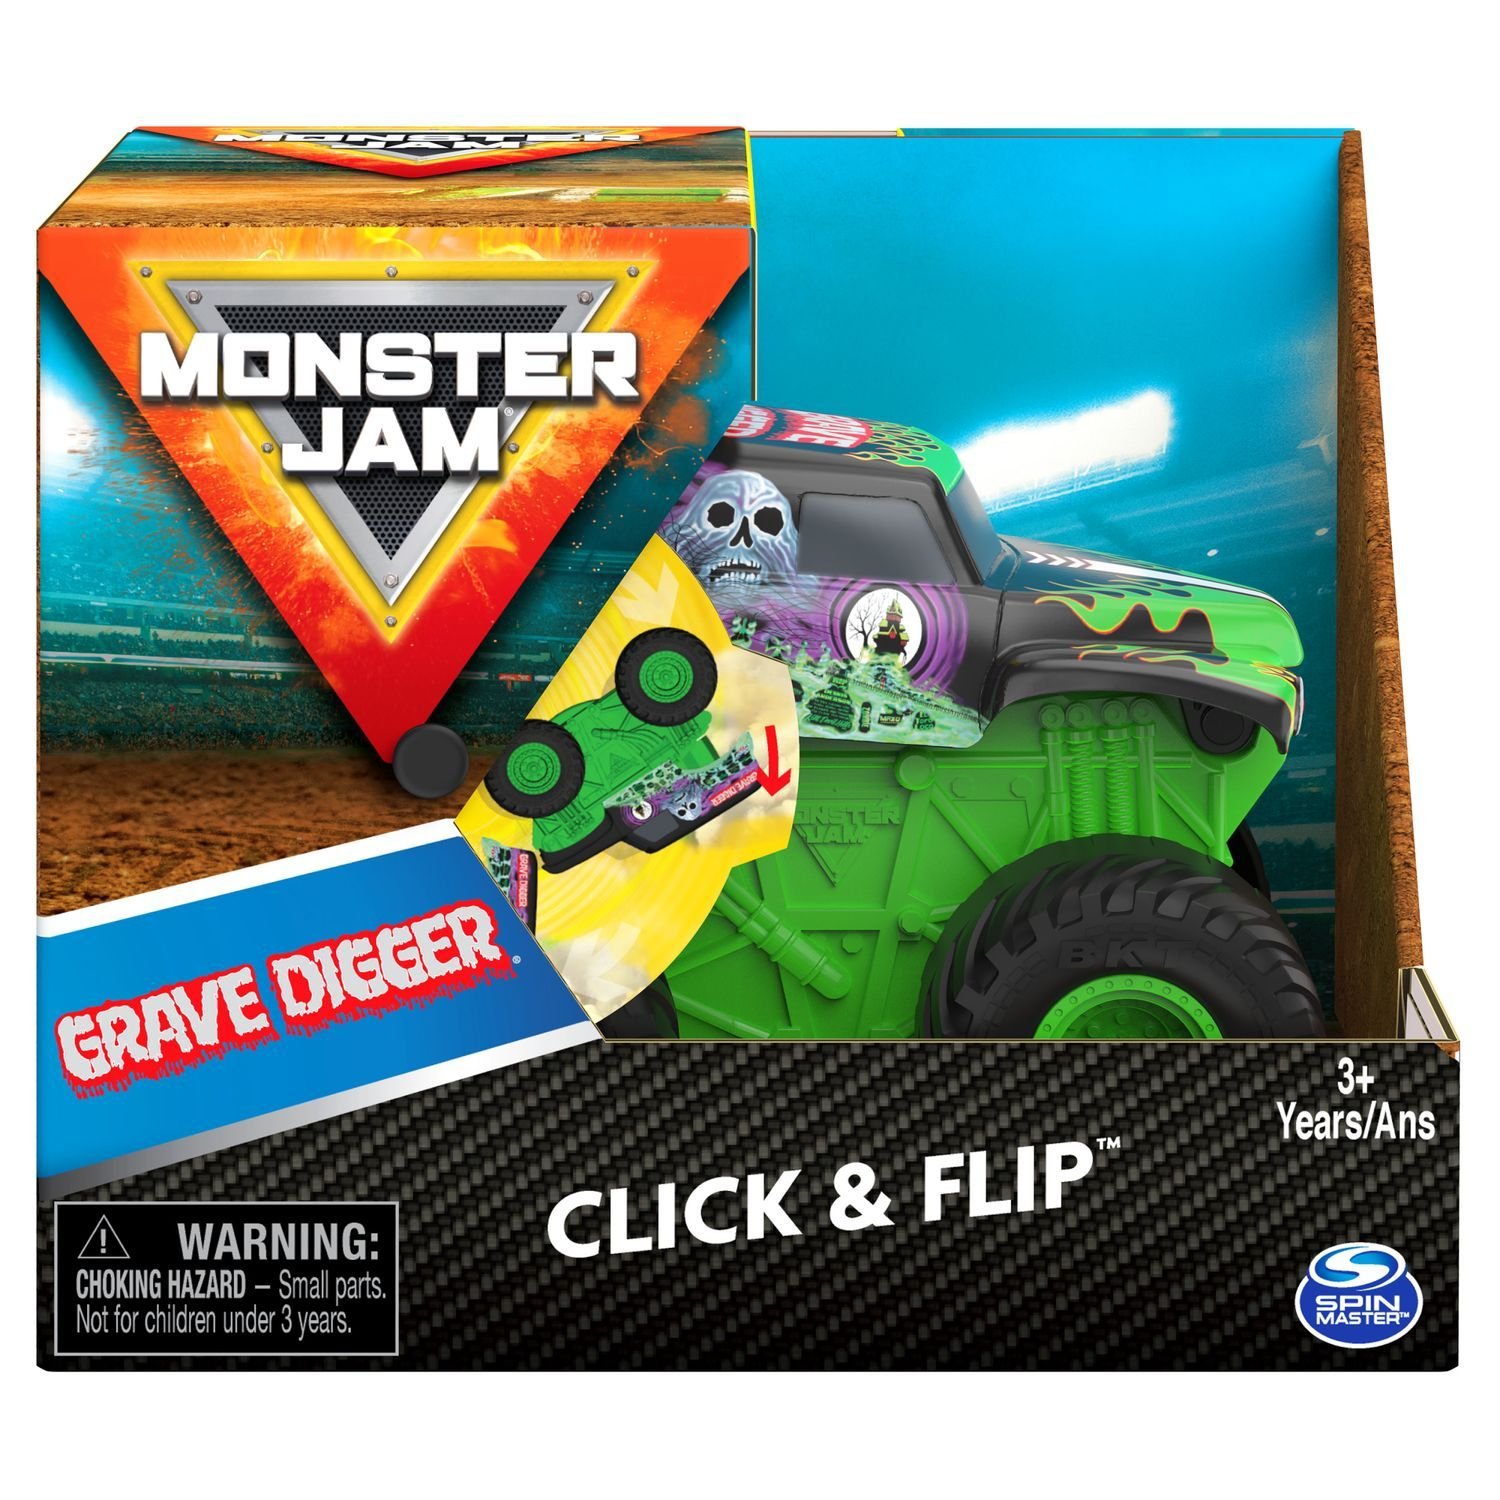 Машинка Monster Jam 1:43 Grave Digger инновационная 6061554